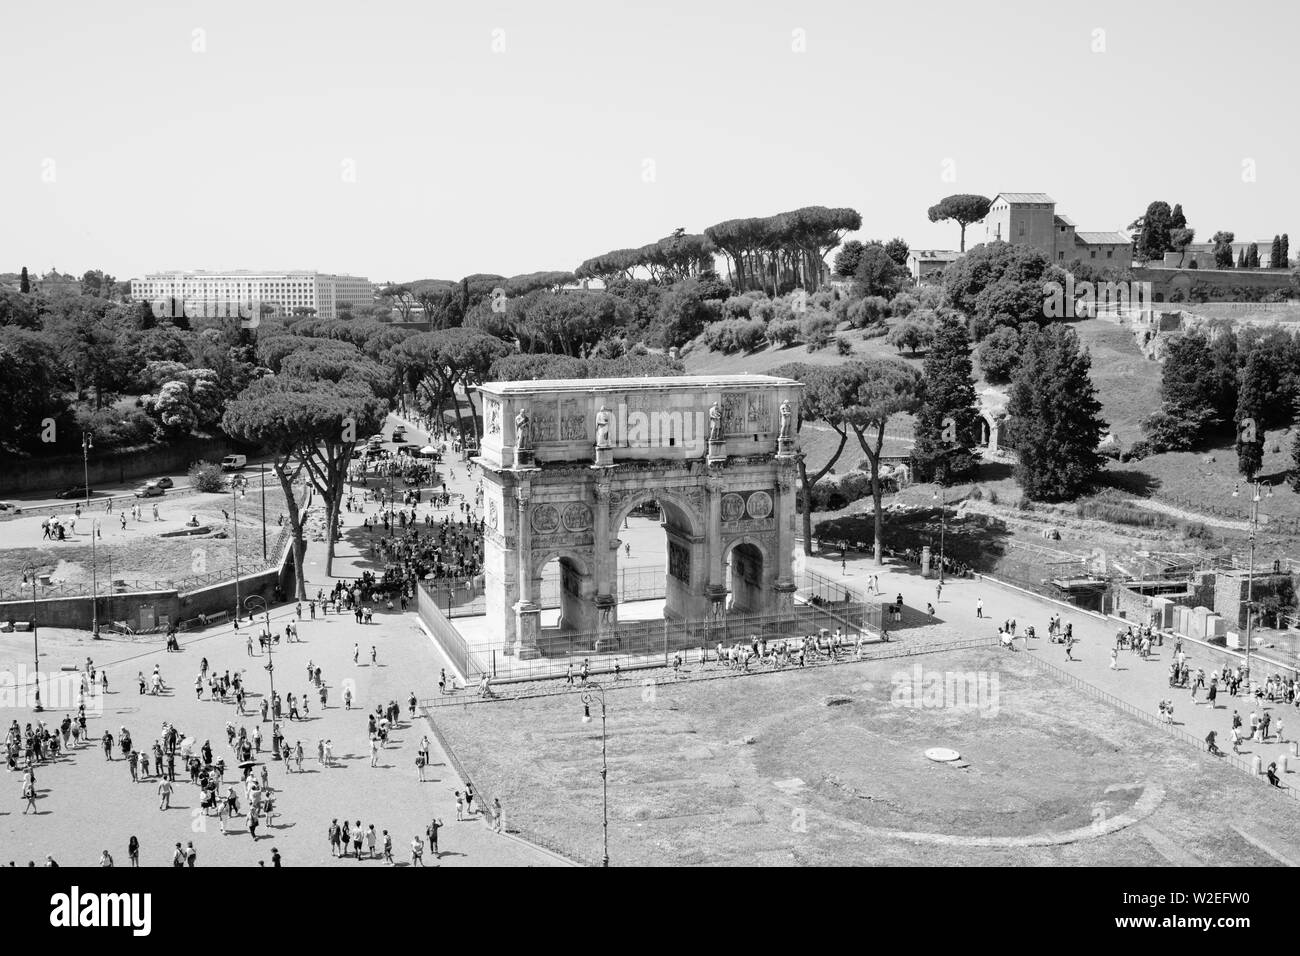 Rome, Italie - 20 juin 2018 : Arc de triomphe de Constantin à Rome, situé entre le Colisée et le Palatin Banque D'Images